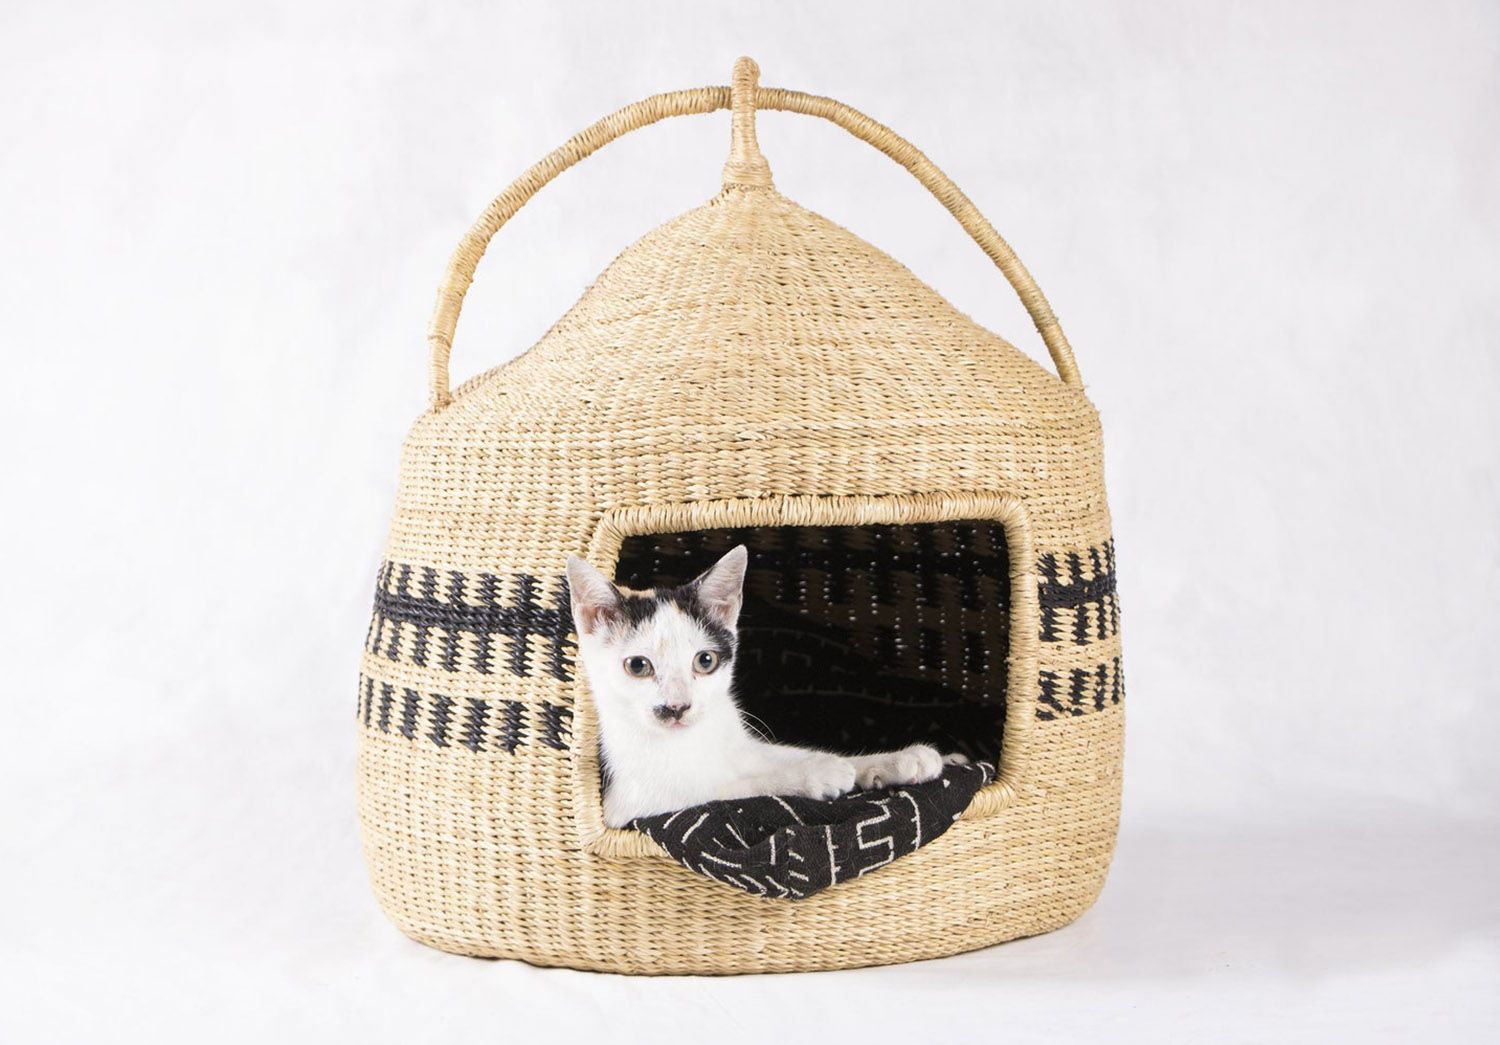 Hand woven African cat pod basket